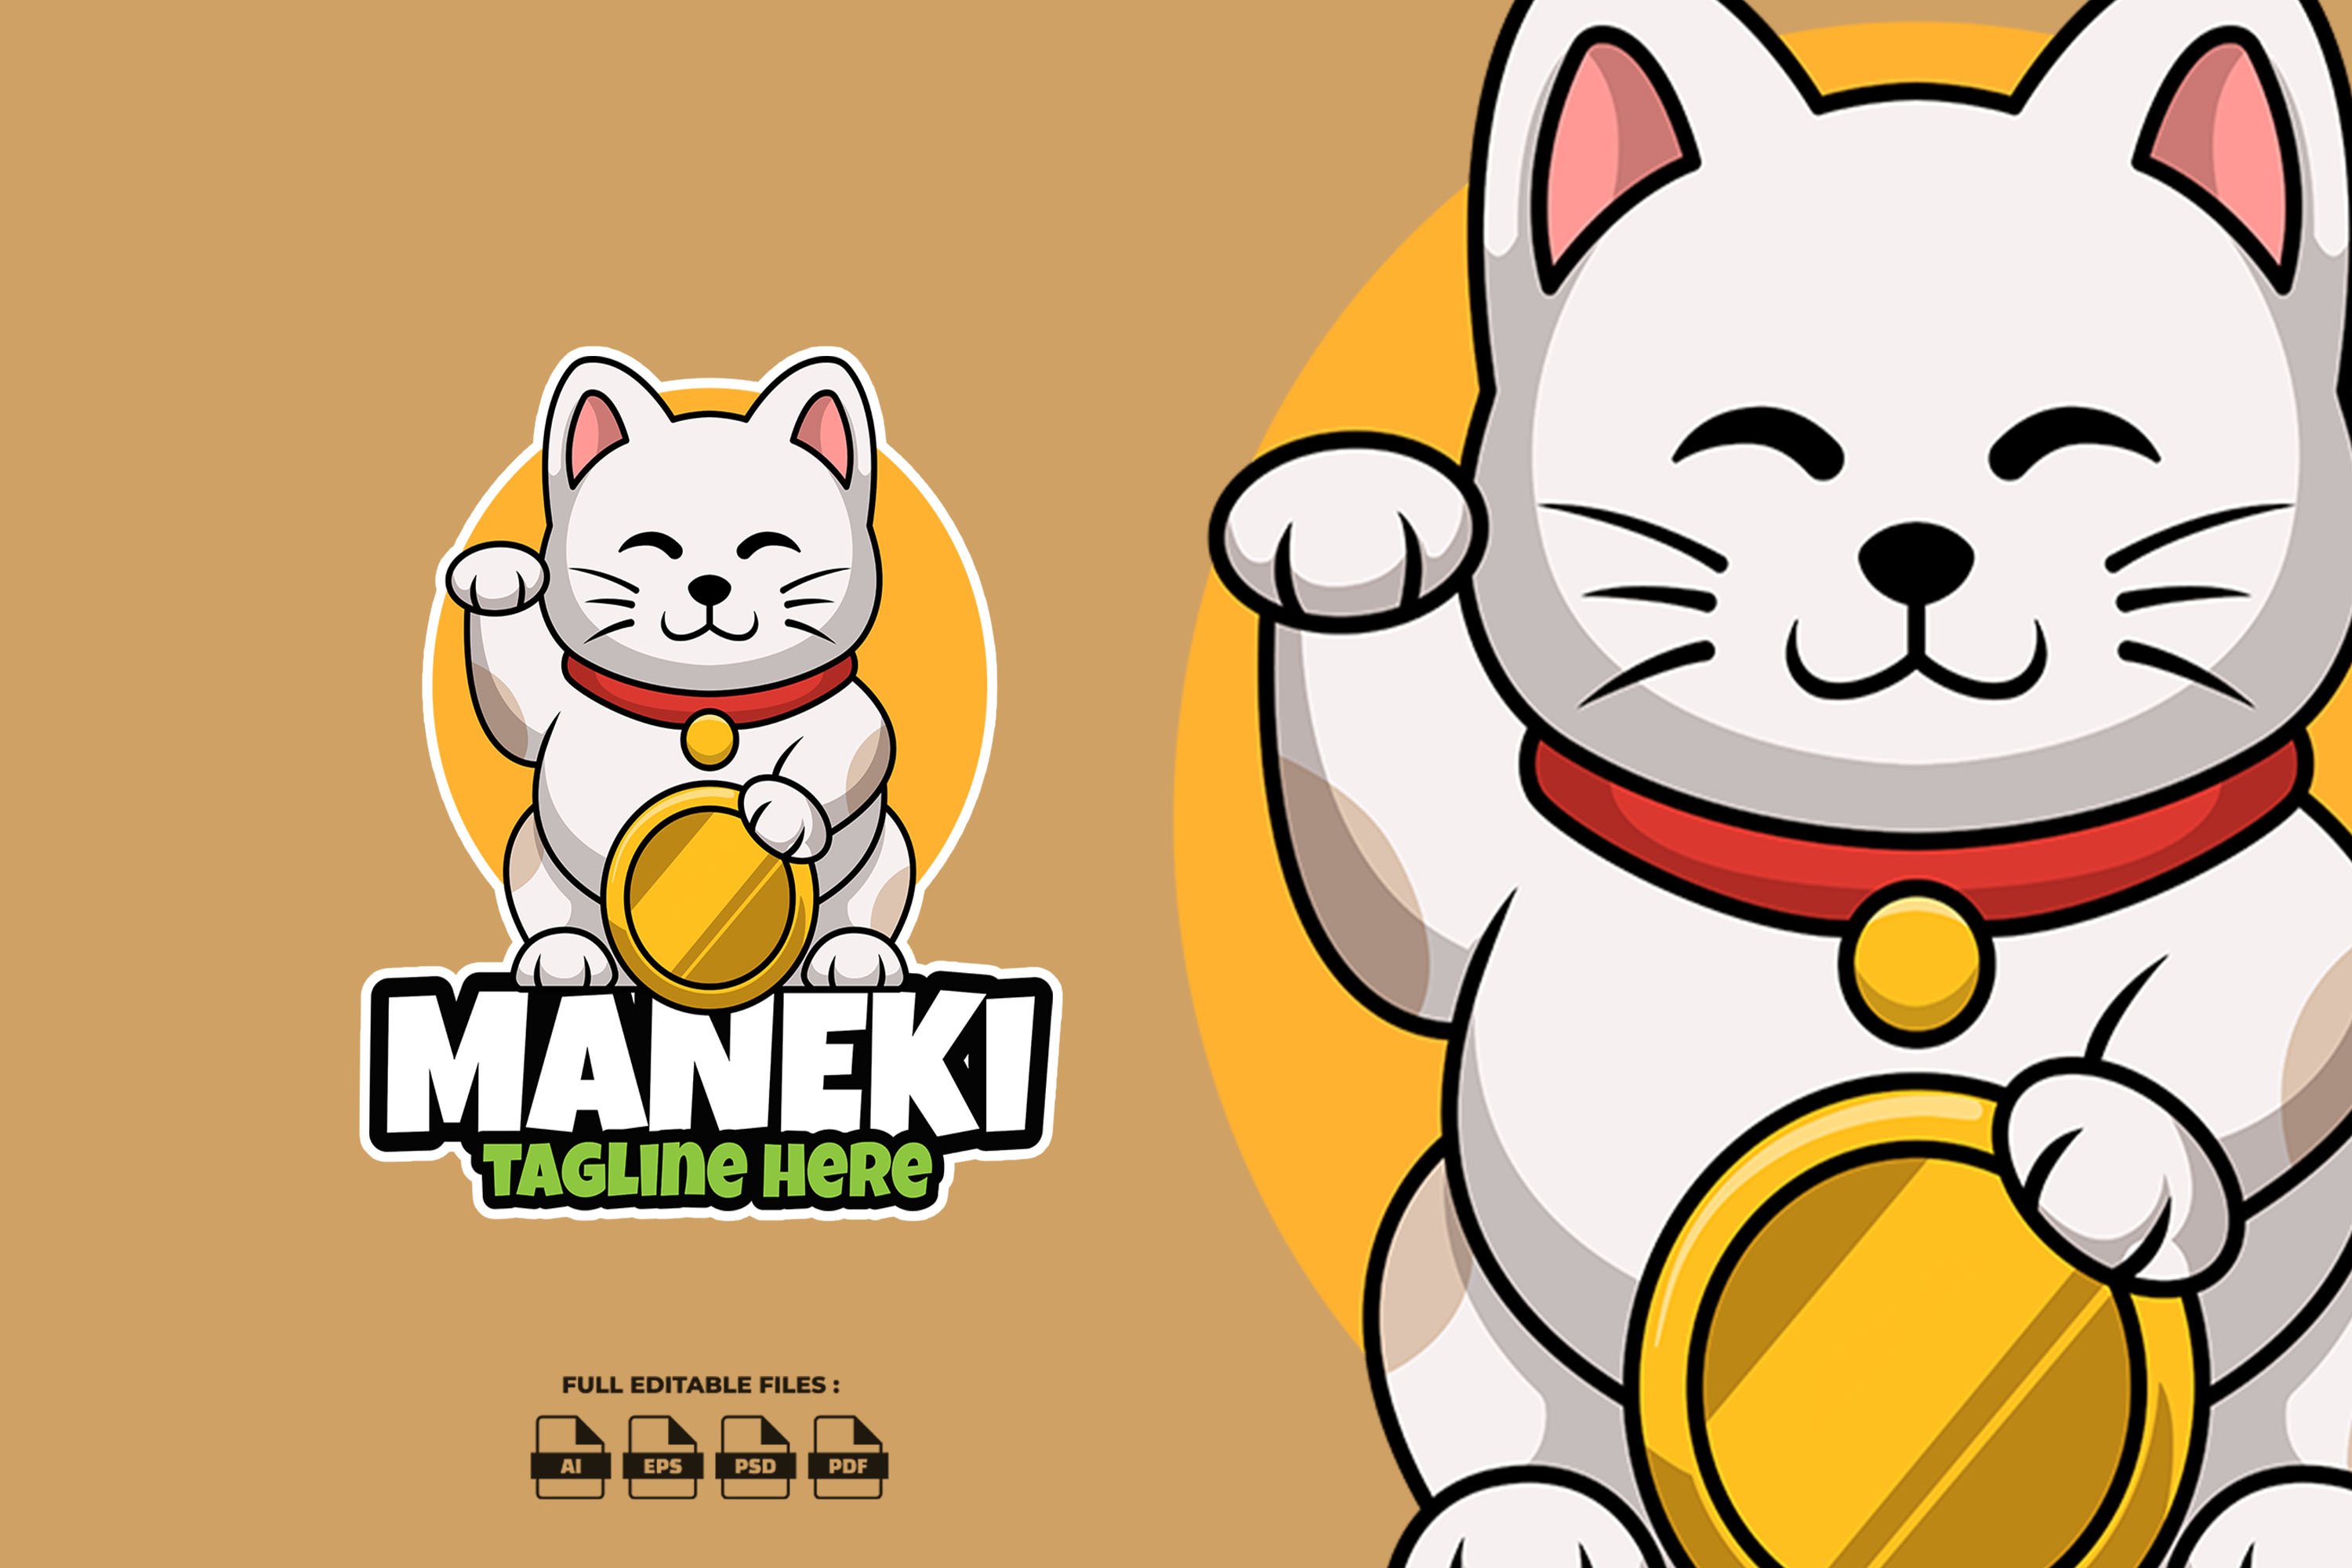 Maneki Neko Coin Mascot Logo cover image.